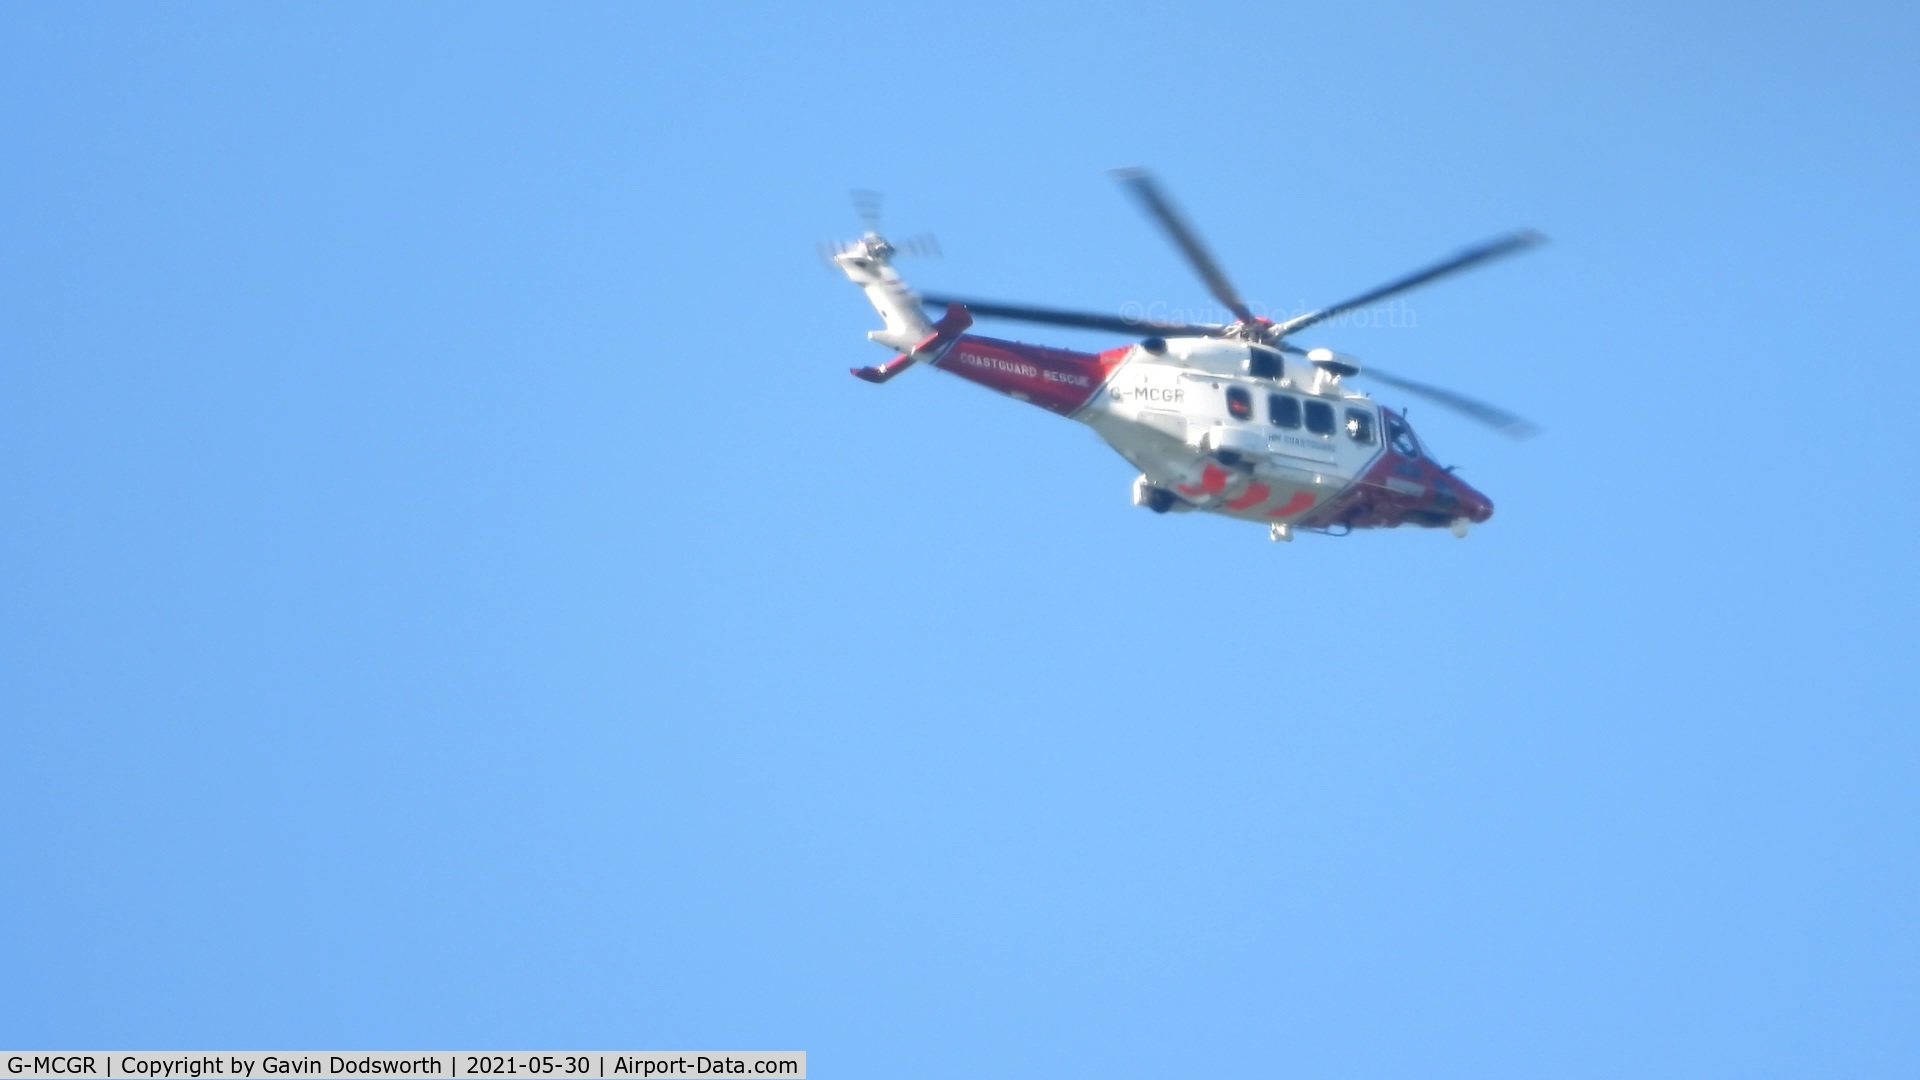 G-MCGR, 2014 AgustaWestland AW189 C/N 92004, Coastguard 199 over Darlington on Sunday 30th May 2021